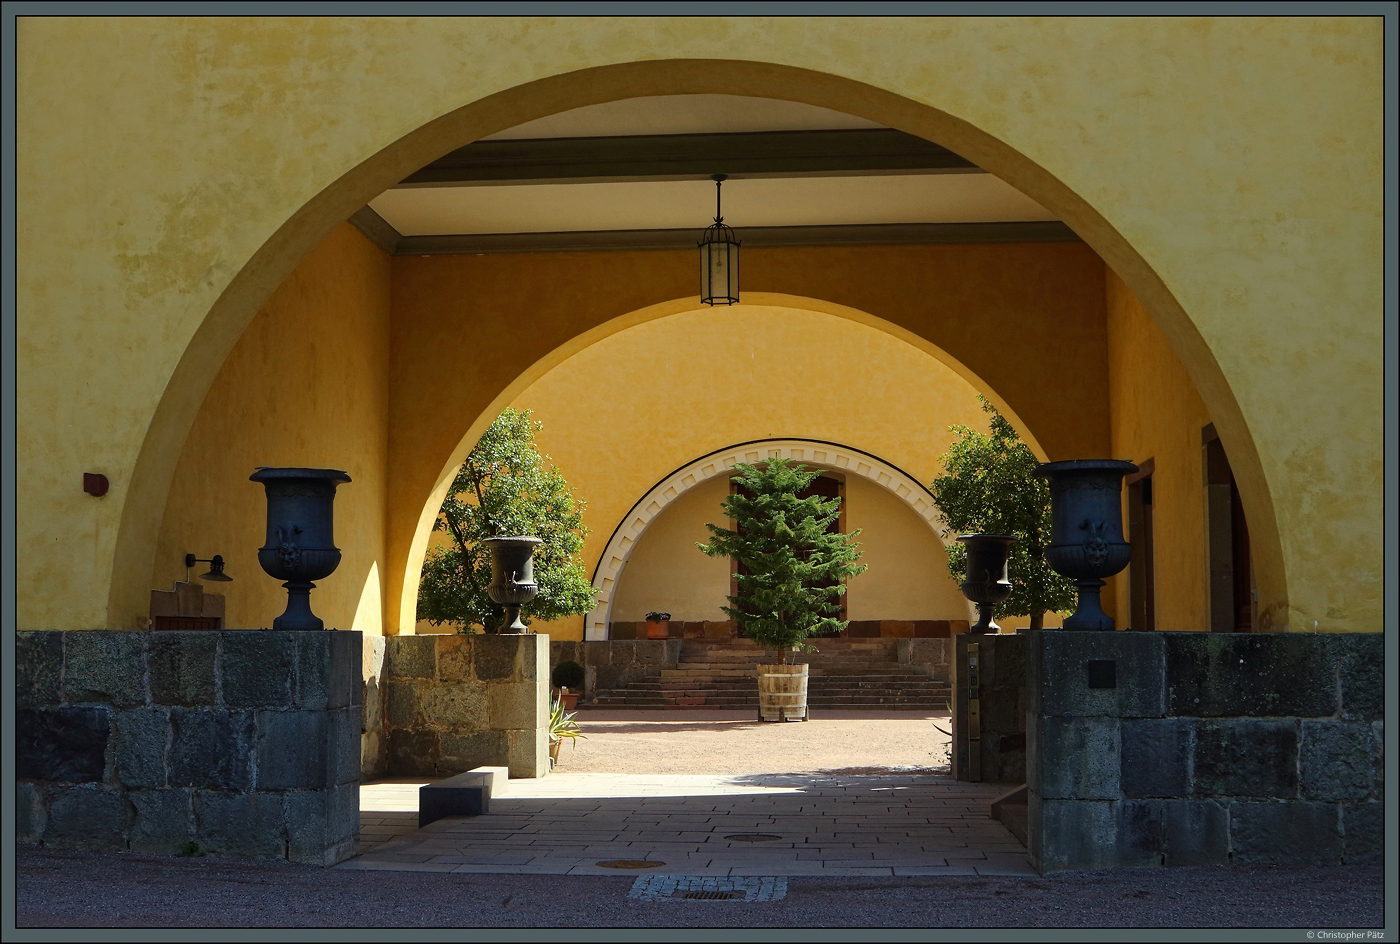 Das Linneanum erffnete 1807 als Orangerie im Botanischen Garten von Uppsala. Zu sehen ist der Durchgang in deren Innenhof. (Uppsala, 19.05.2023)